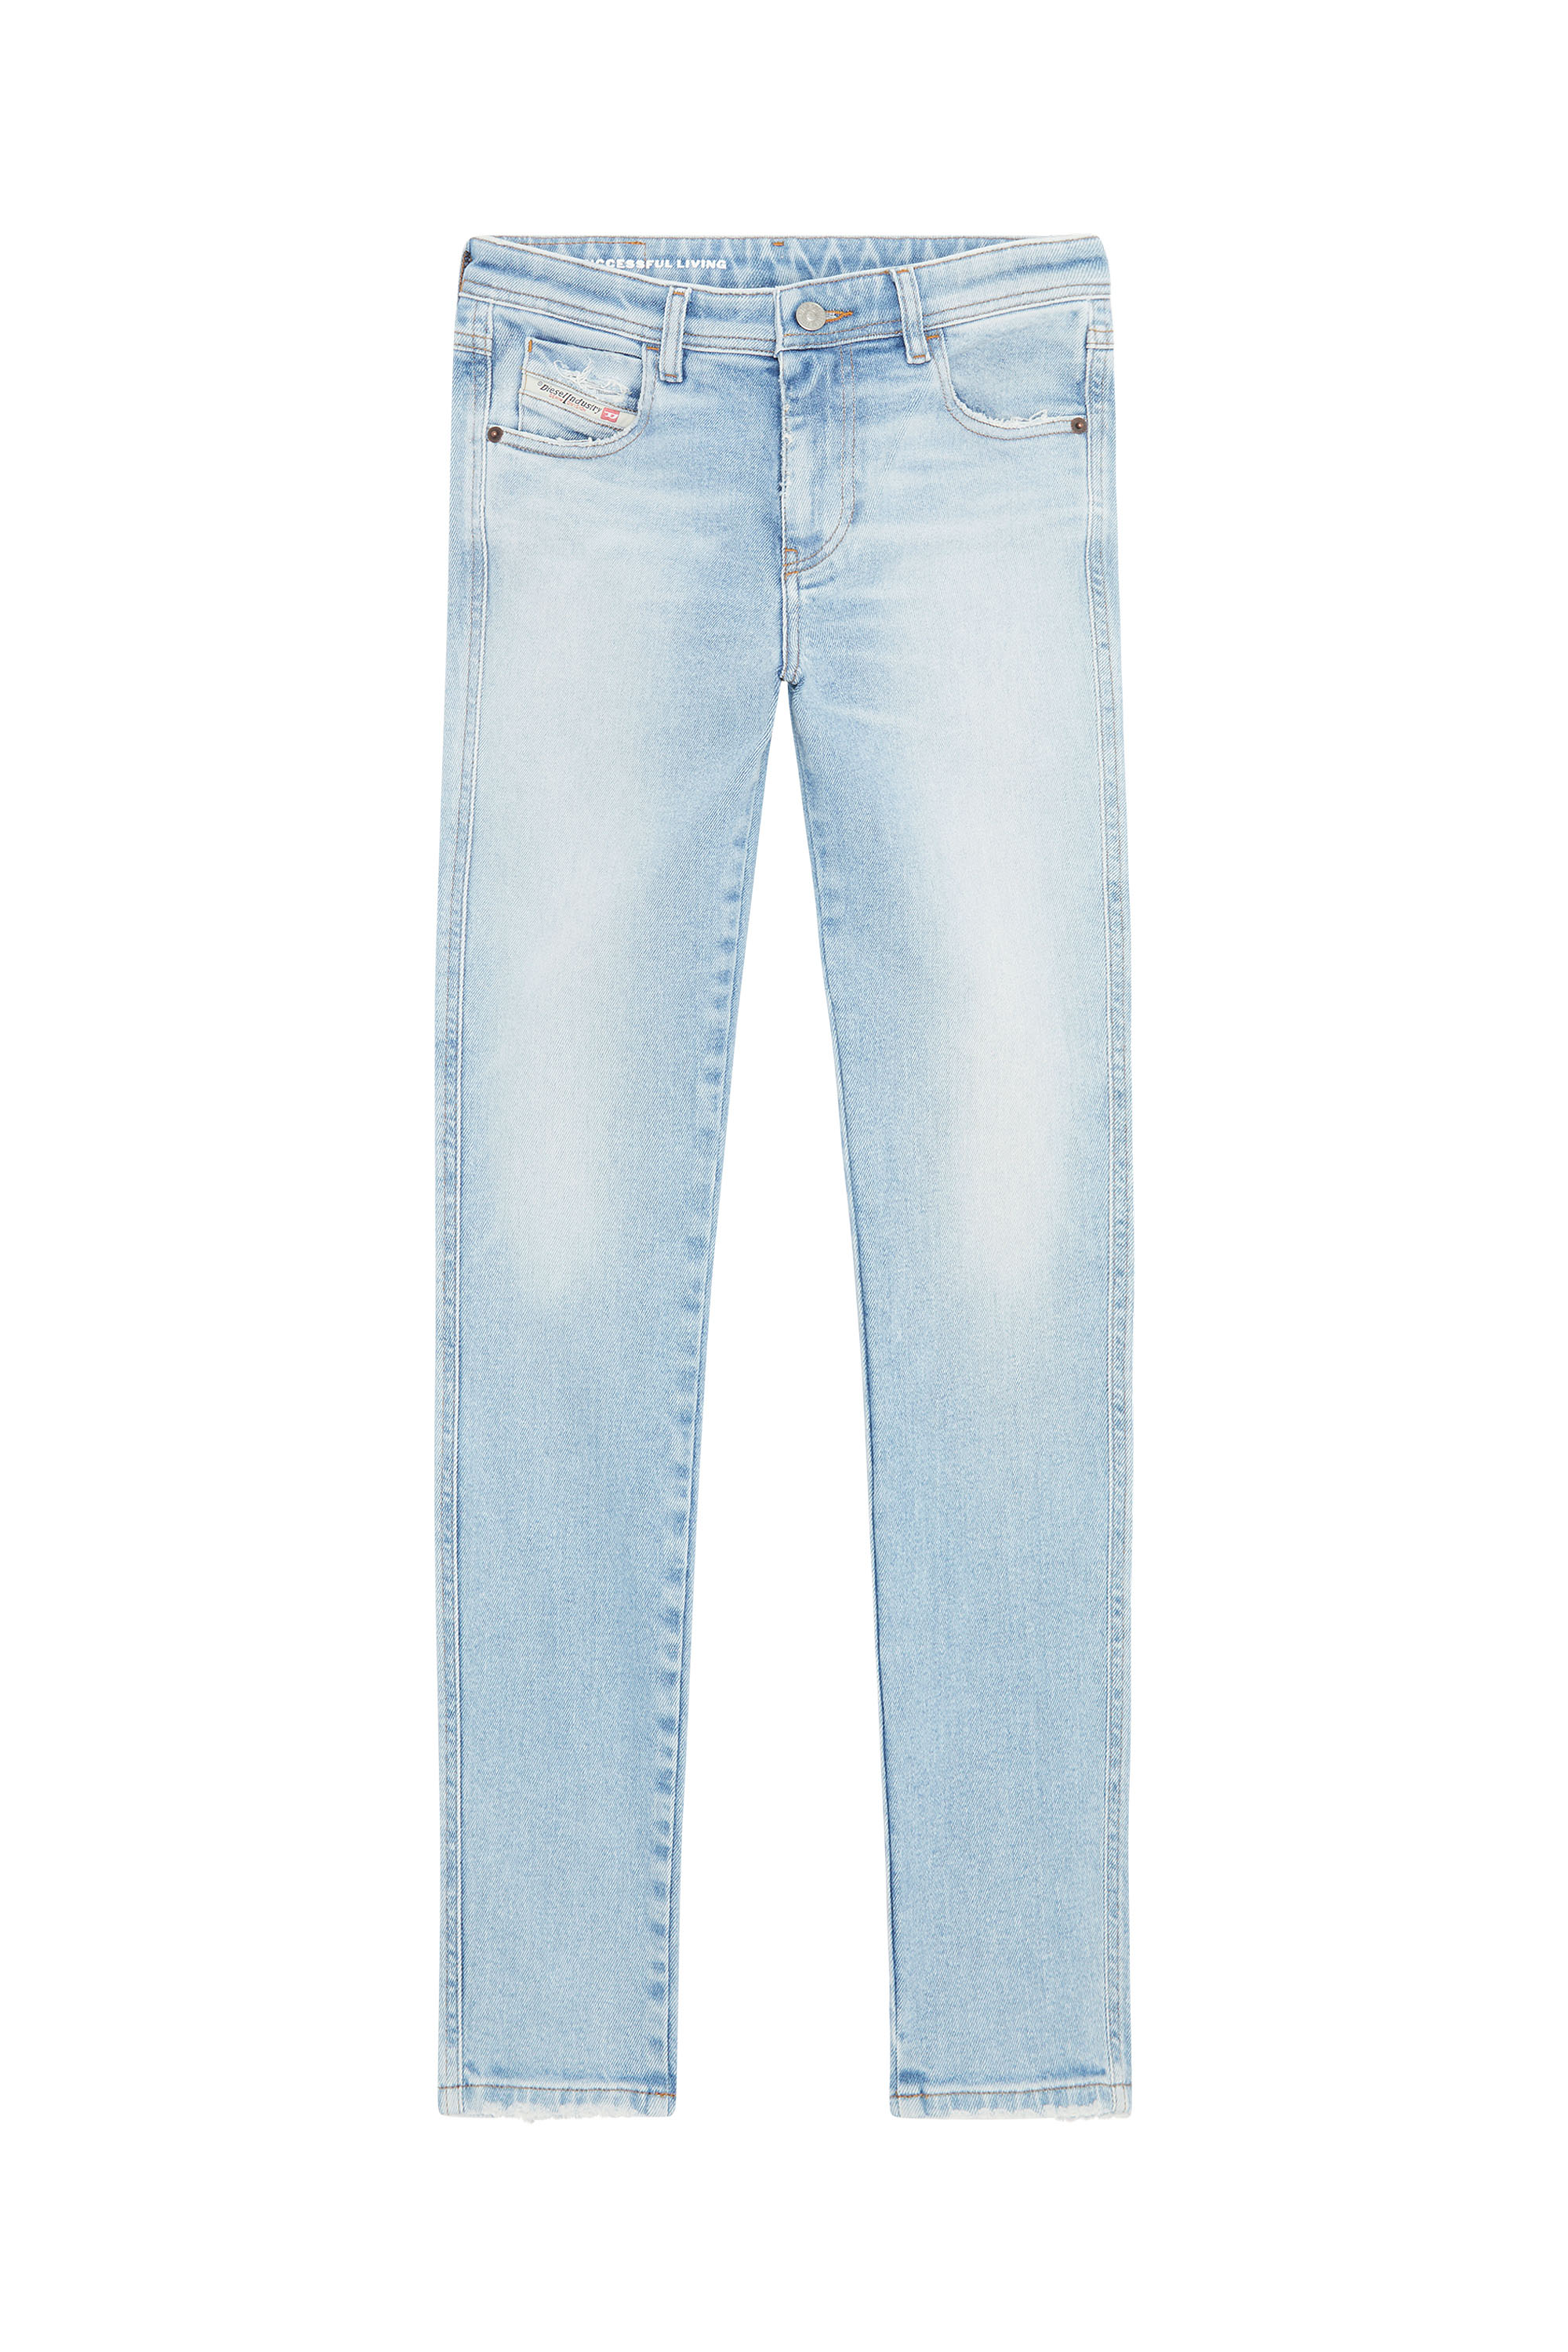 Diesel - Skinny Jeans 2015 Babhila 09E90,  - Image 6